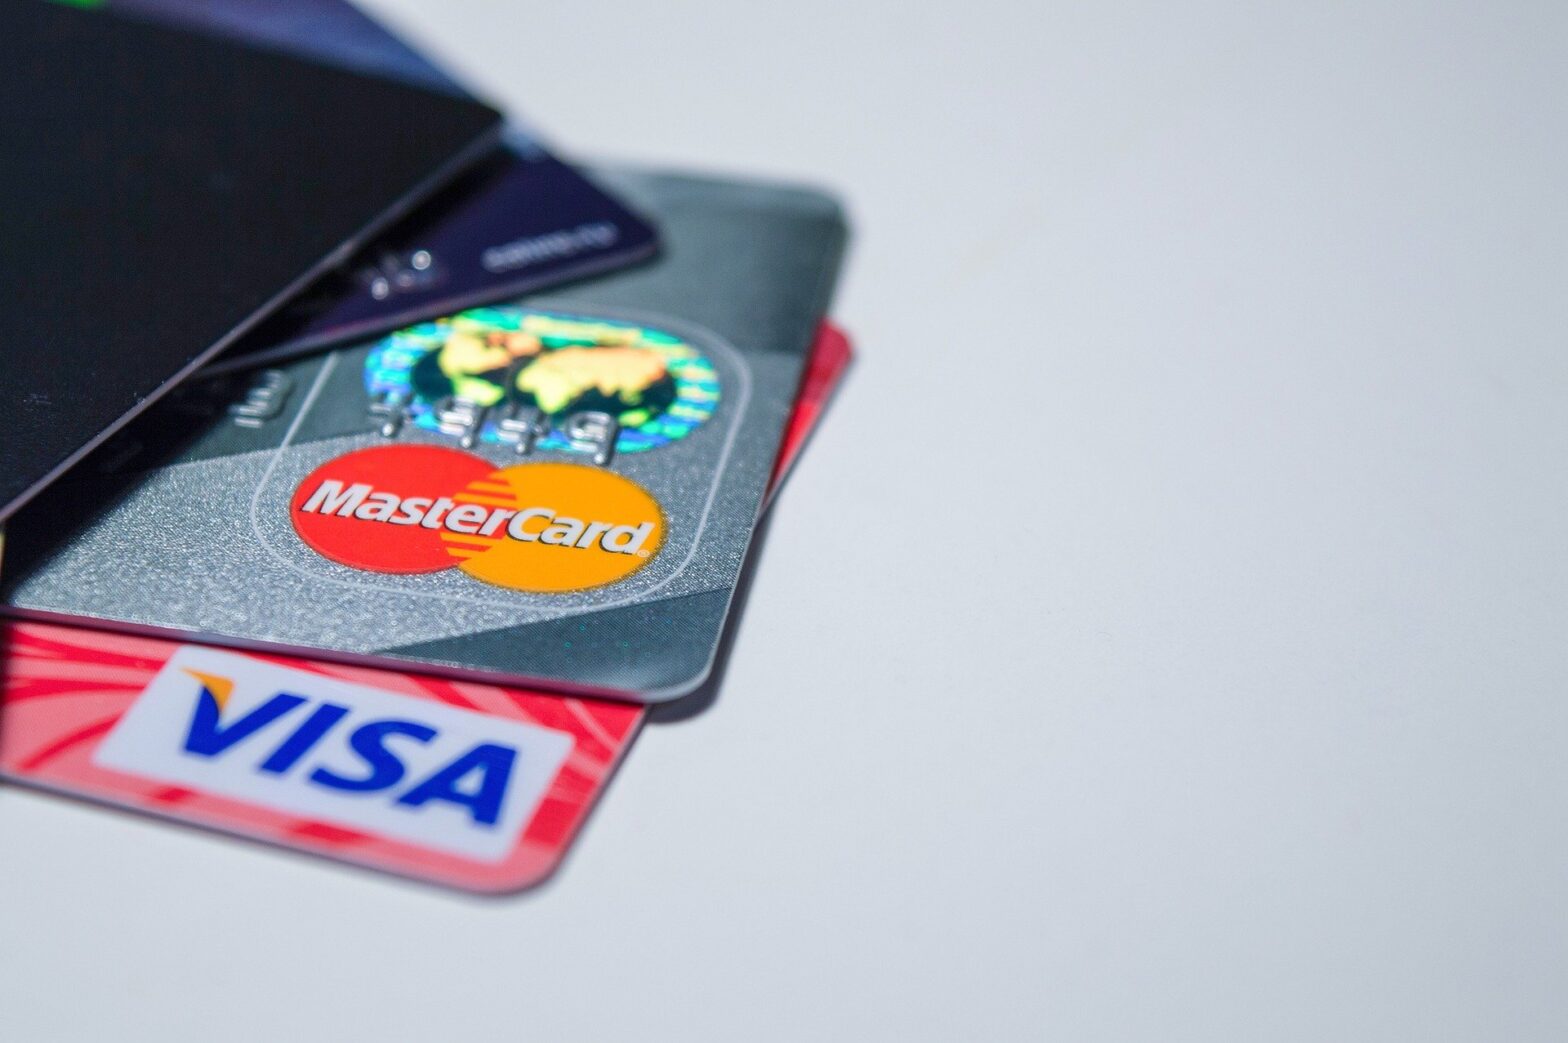 Come pagare con carte Yap, Revolut, Hype e Postepay utilizzando Samsung Pay